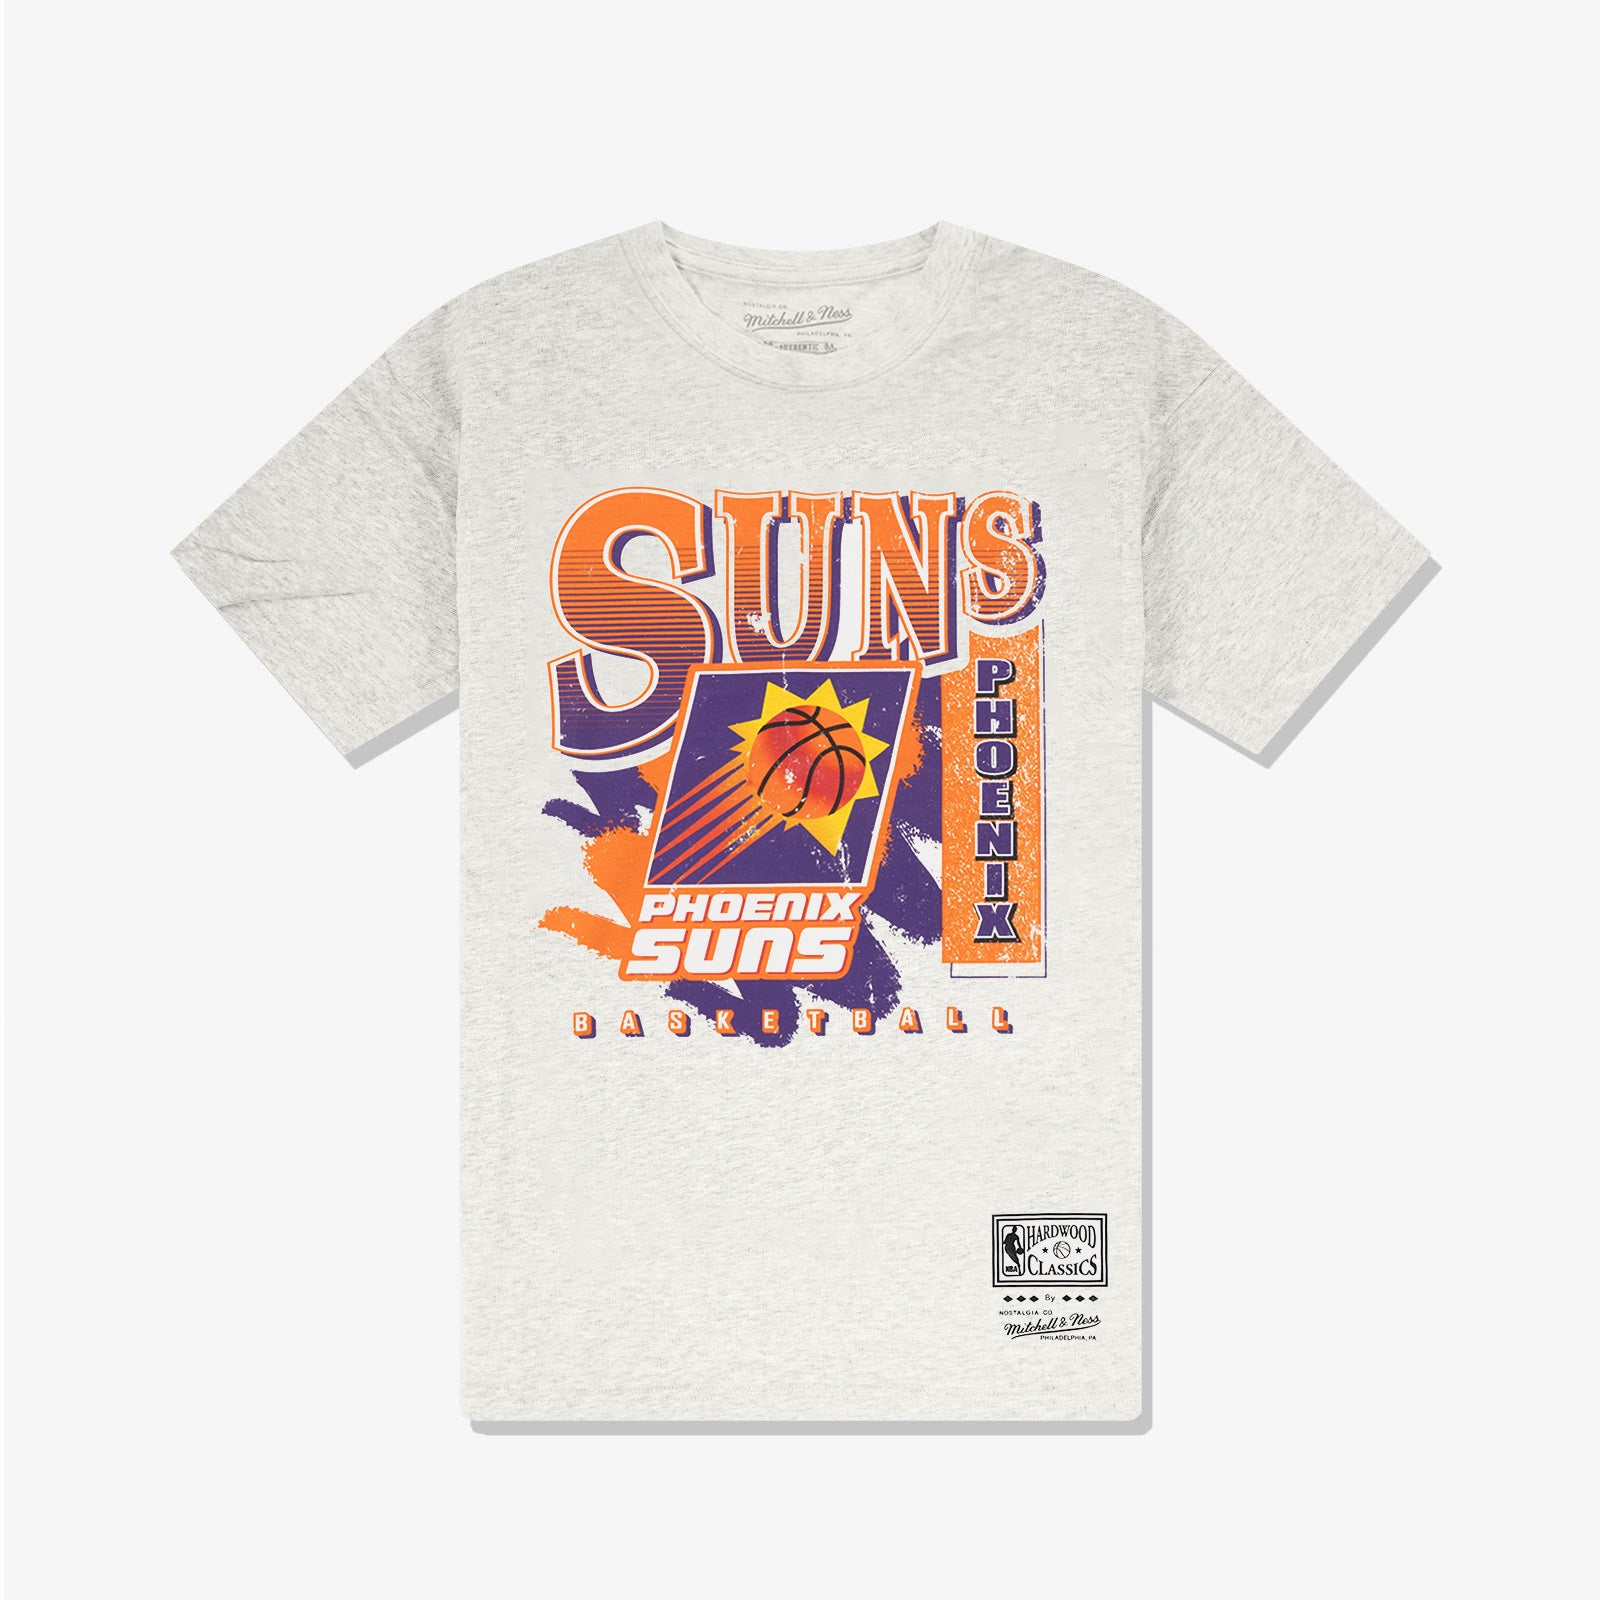 MITCHELL AND NESS Phoenix Suns Jersey TFSM5885-PSU96SNAORAN - Shiekh